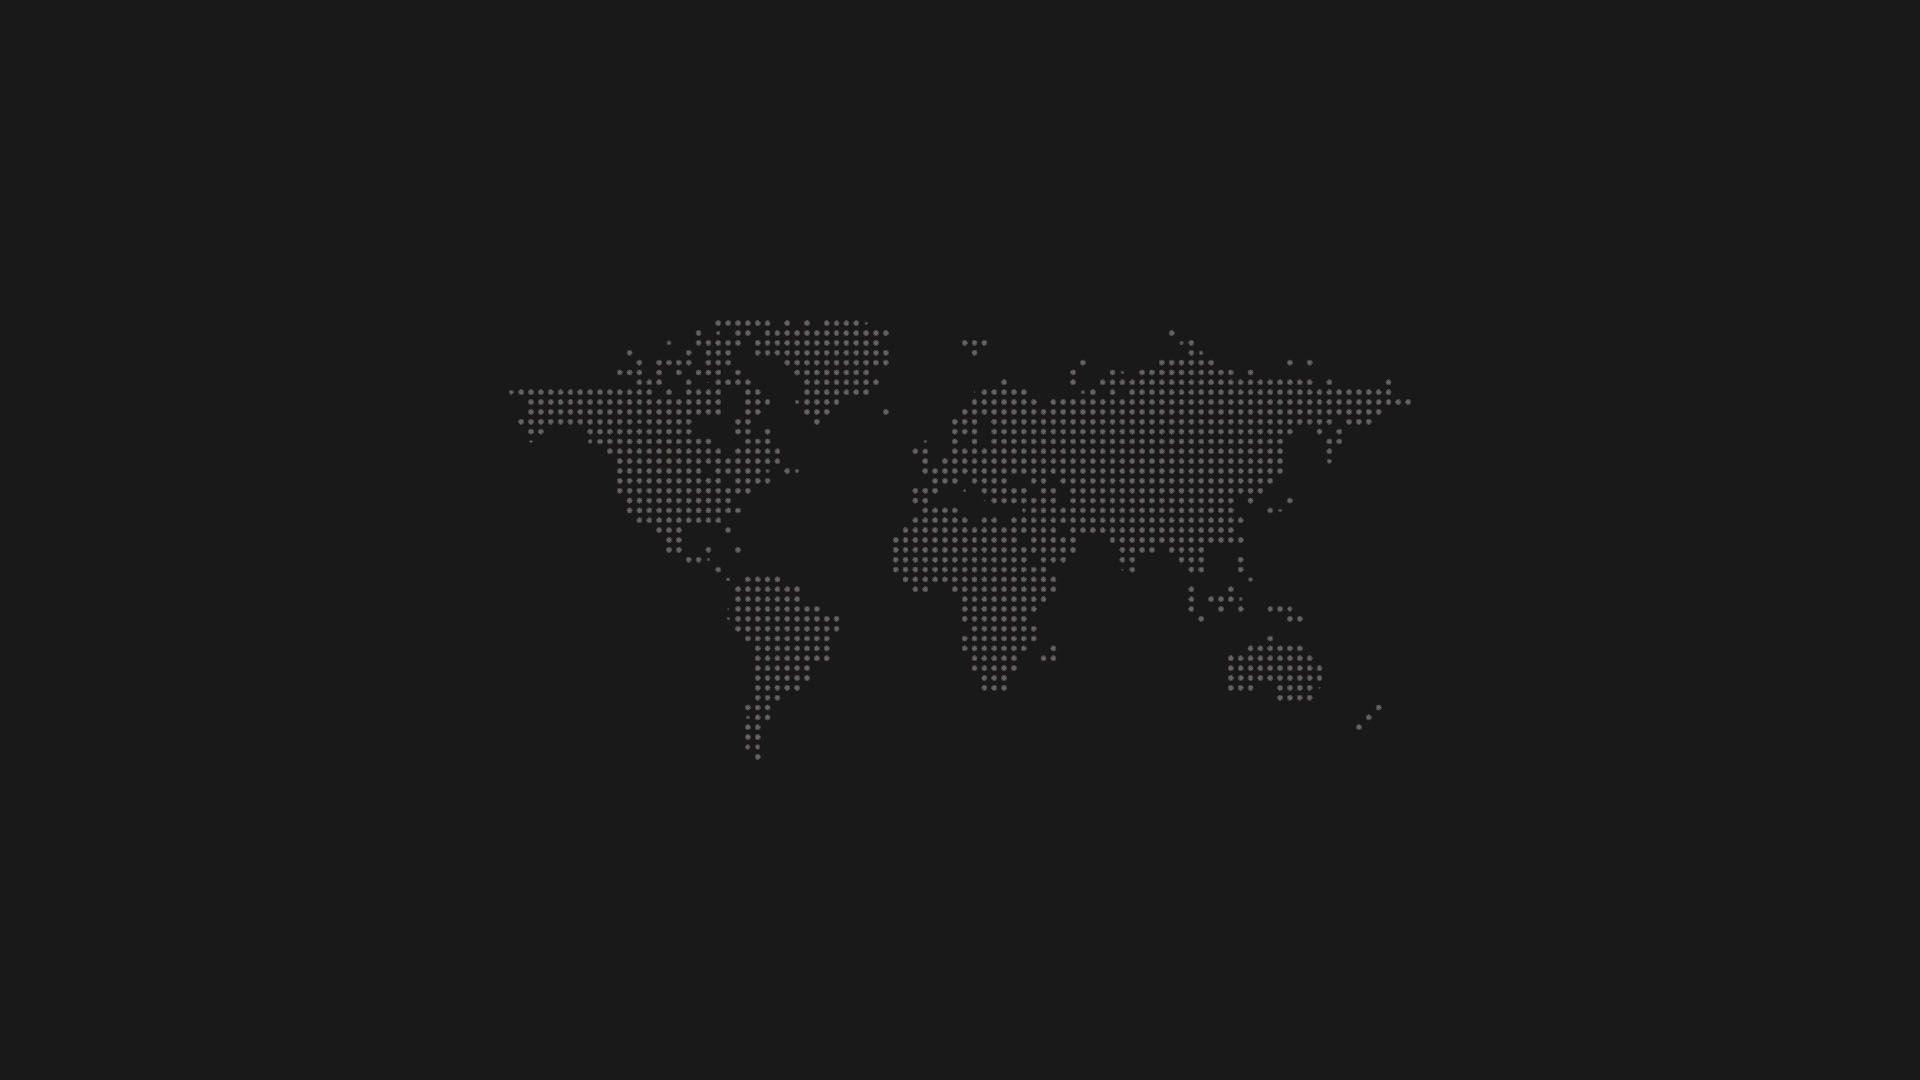 Live World Map Desktop Wallpaper